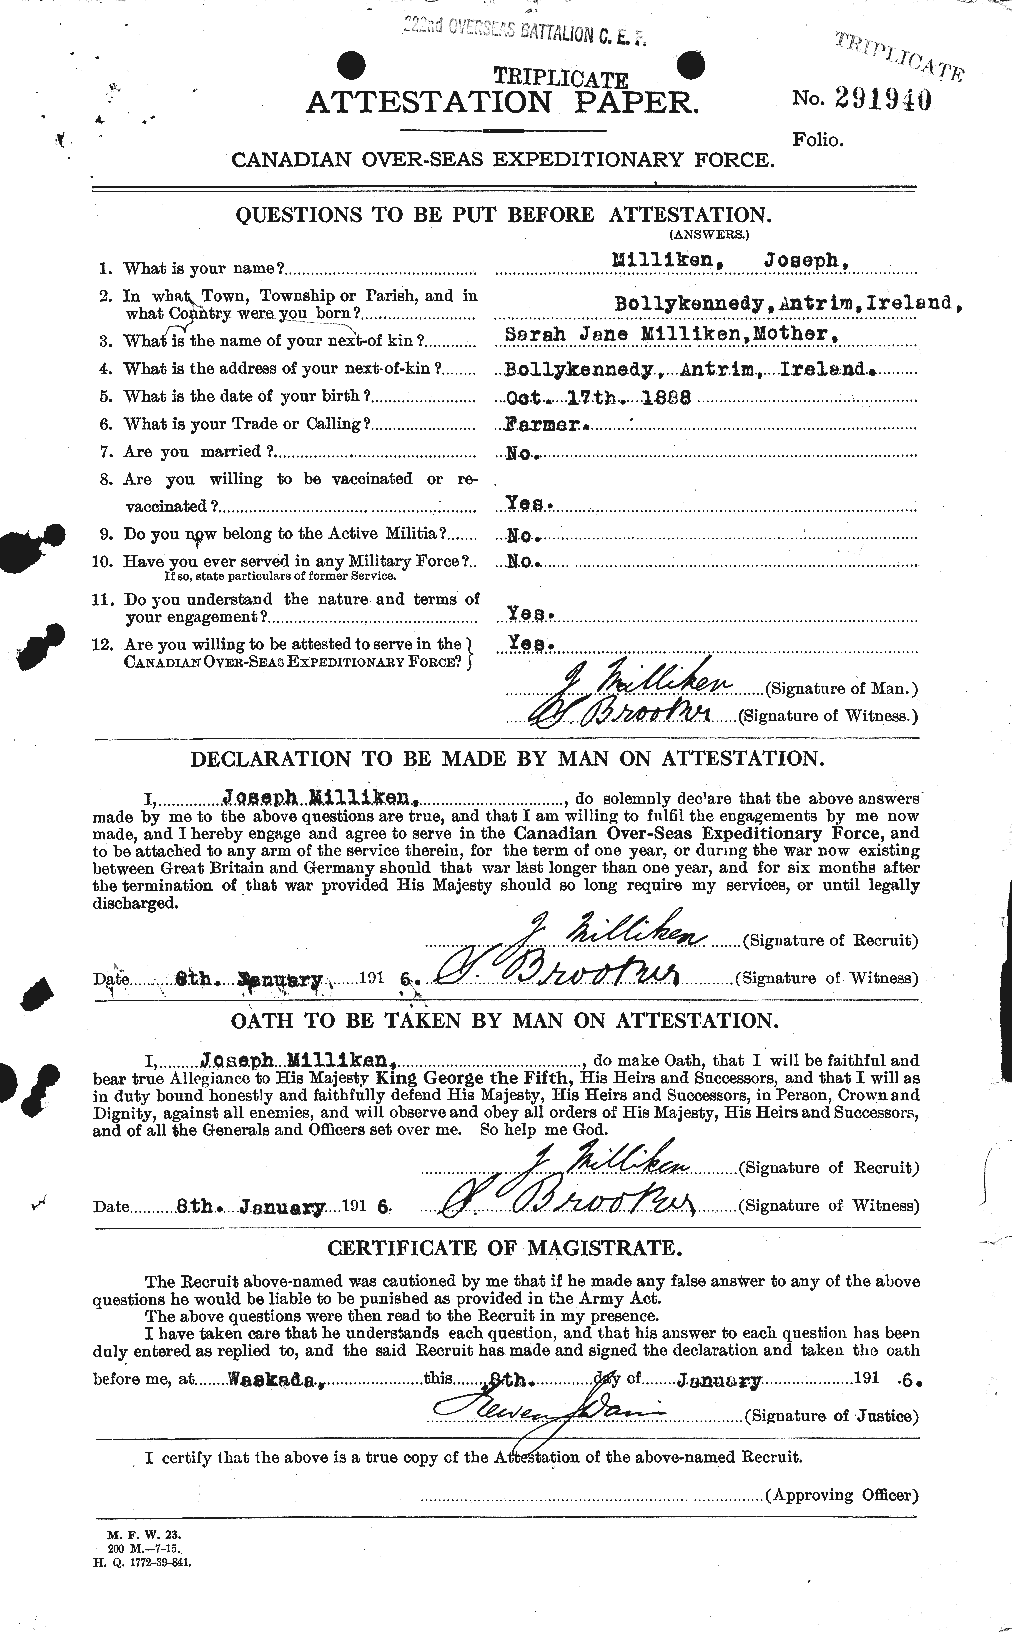 Dossiers du Personnel de la Première Guerre mondiale - CEC 496372a